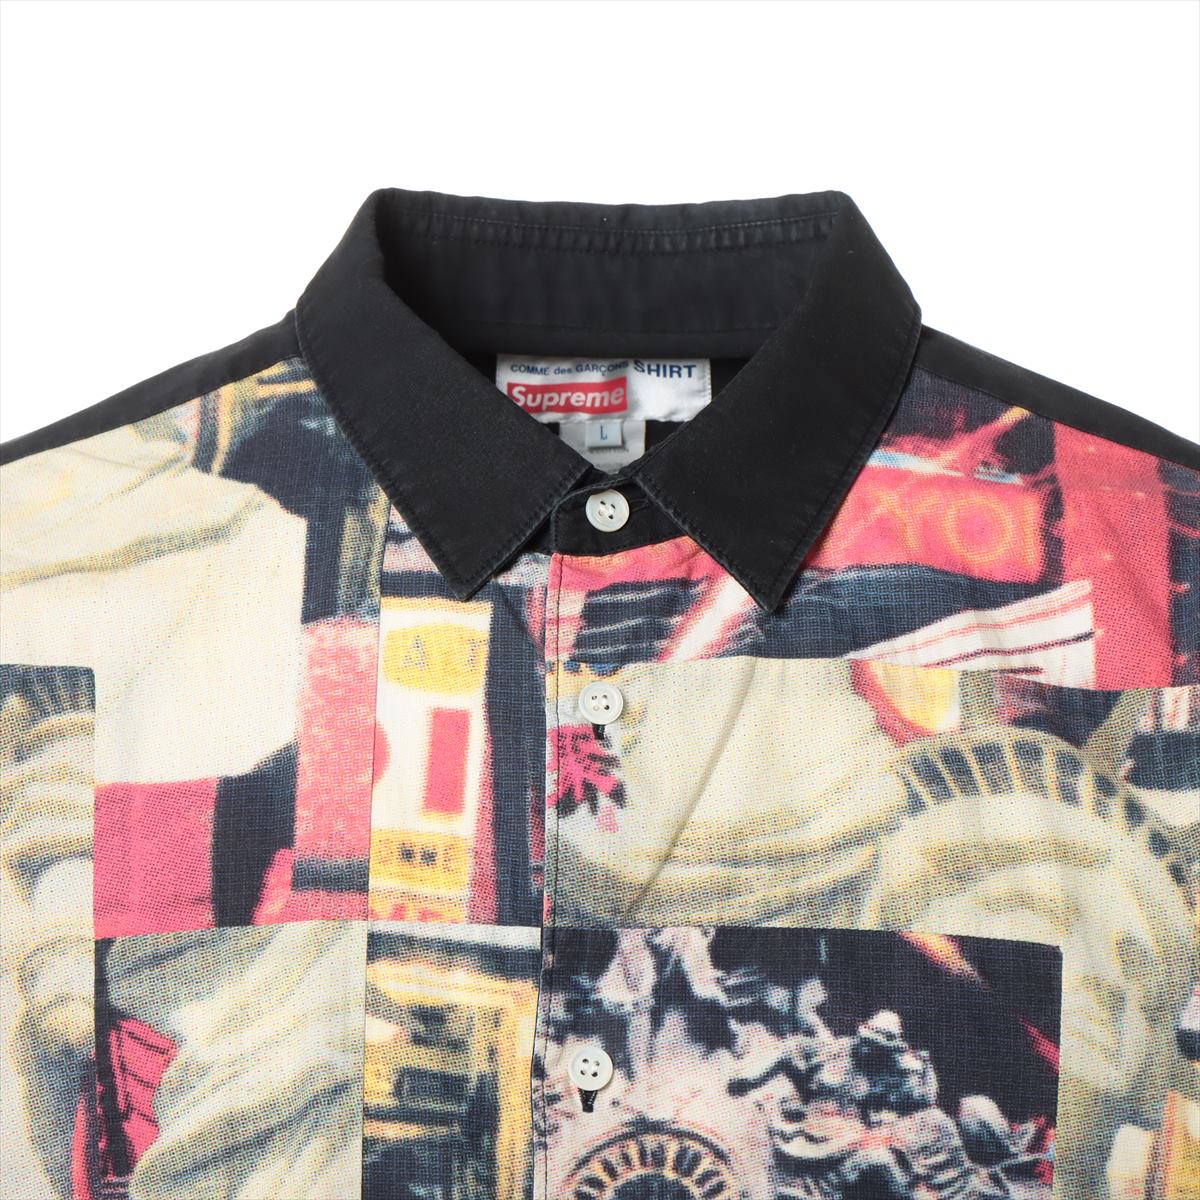 シュプリーム×コムデギャルソンシャツ 18AW コットン シャツ L メンズ マルチカラー  S2FW18 Cotton Patchwork Button Up Shirt